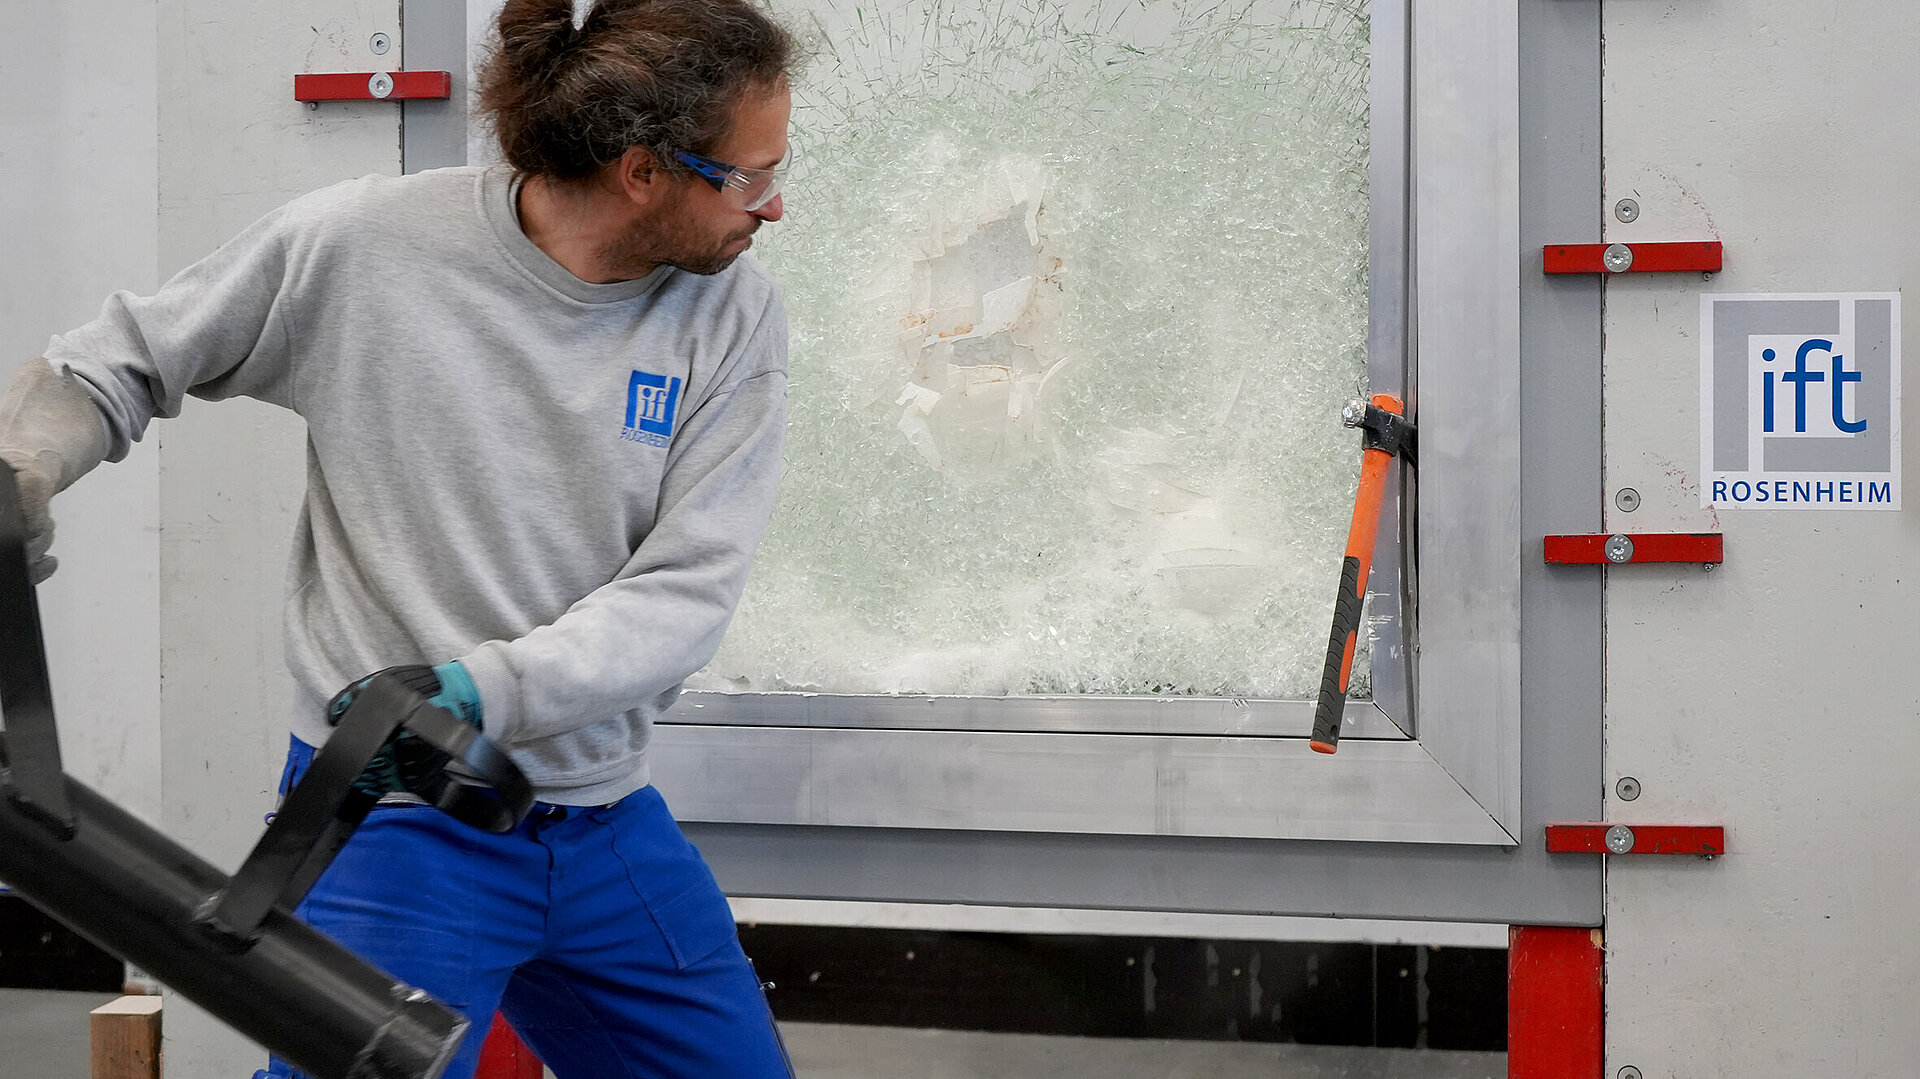 ift-Prüfer mit Ramme in der Hand steht vor einem Fenster mit gebrochener Scheibe zur Vandalismusprüfung